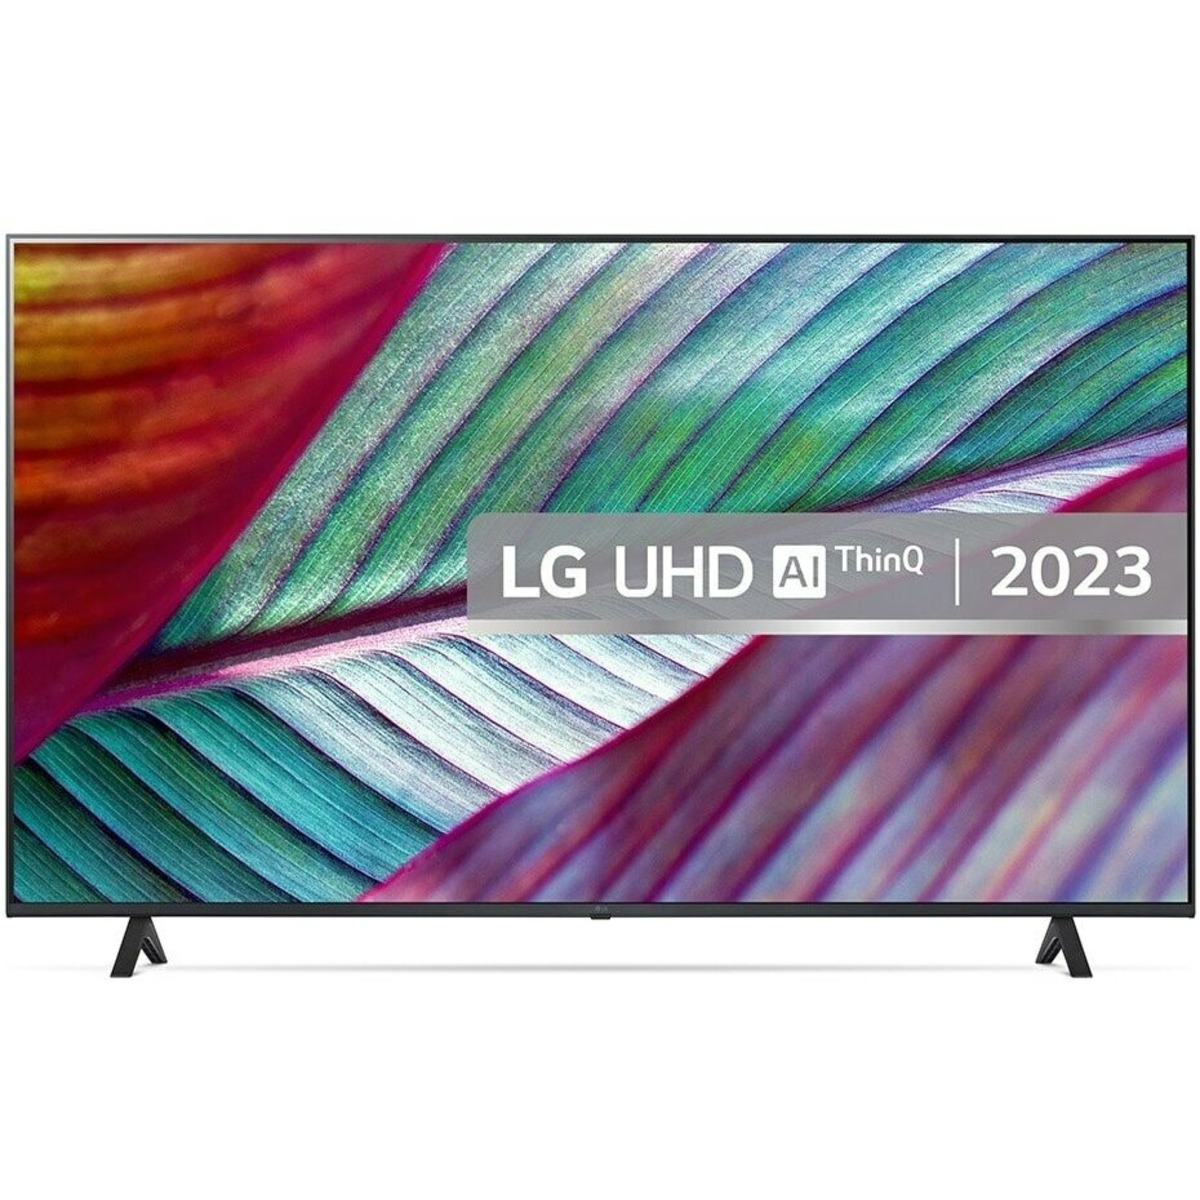 Телевизор LG 50